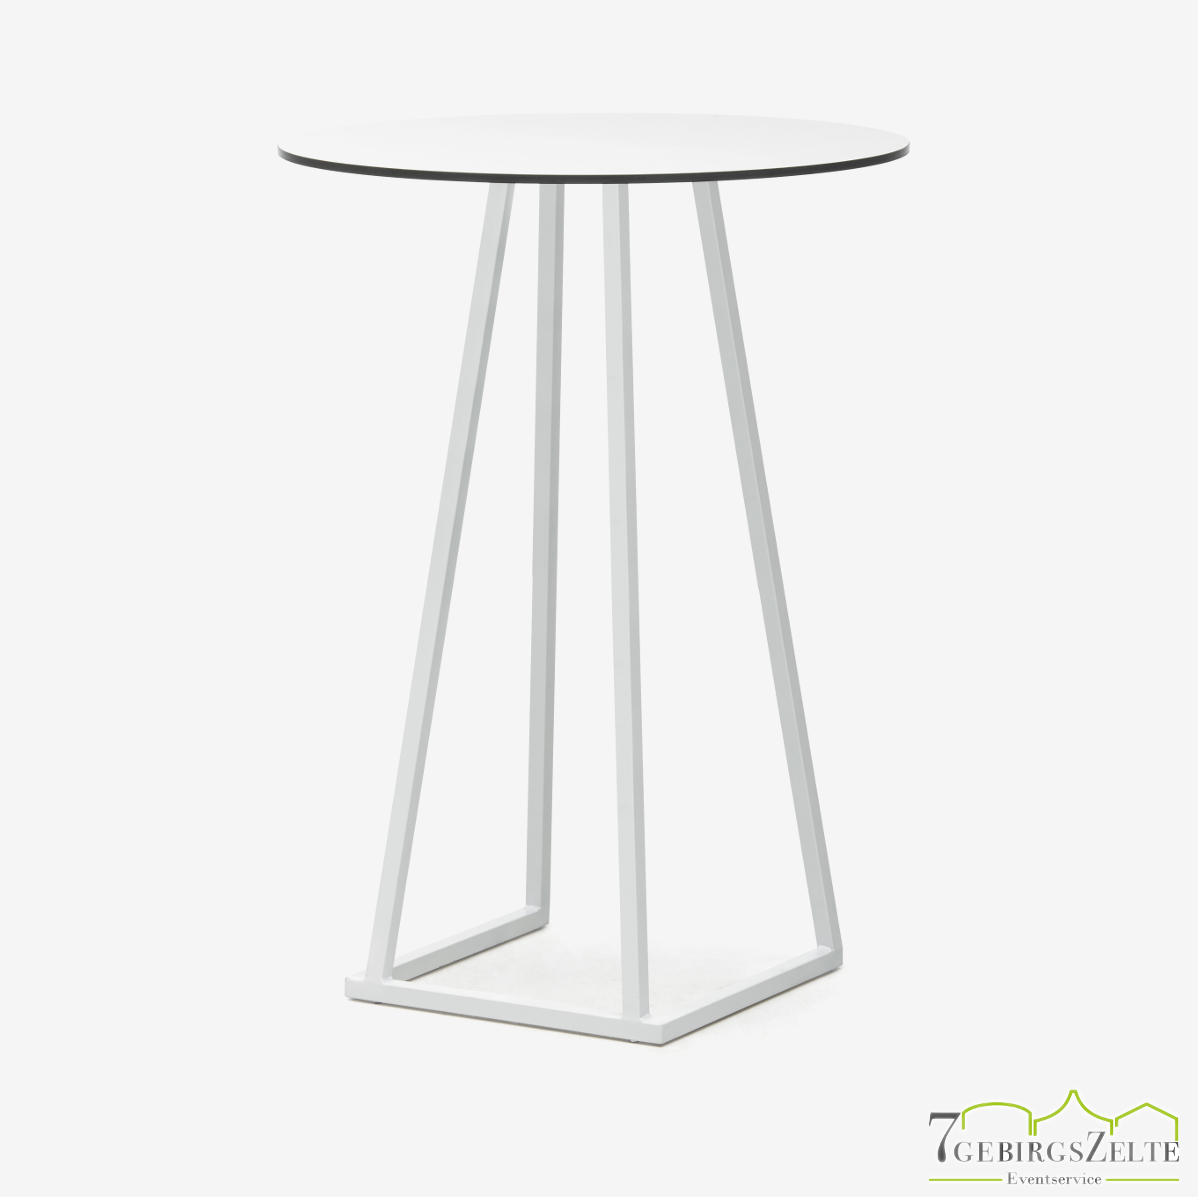 Linéa Lounge Rund 80 cm - Aluminium weiß  - Tischplatte melamine weiß